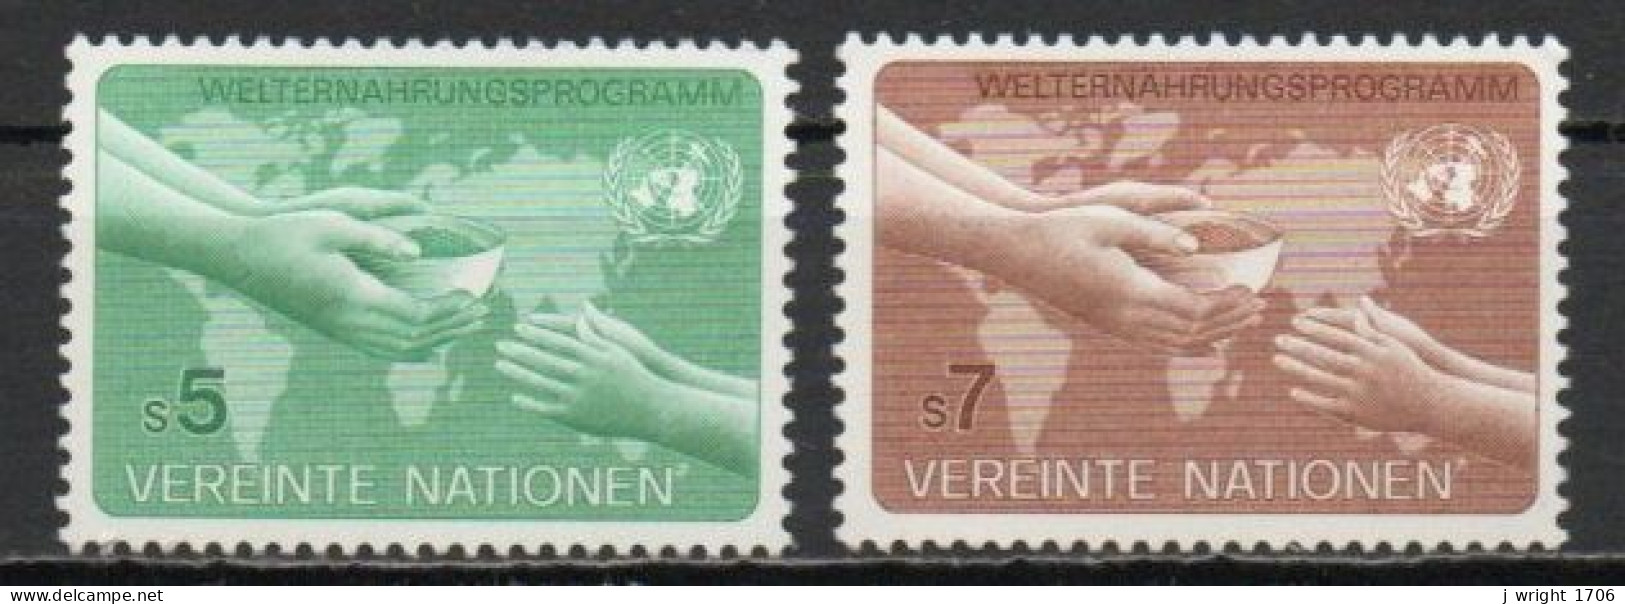 UN/Vienna, 1983, World Food Programme, Set, MNH - Nuovi